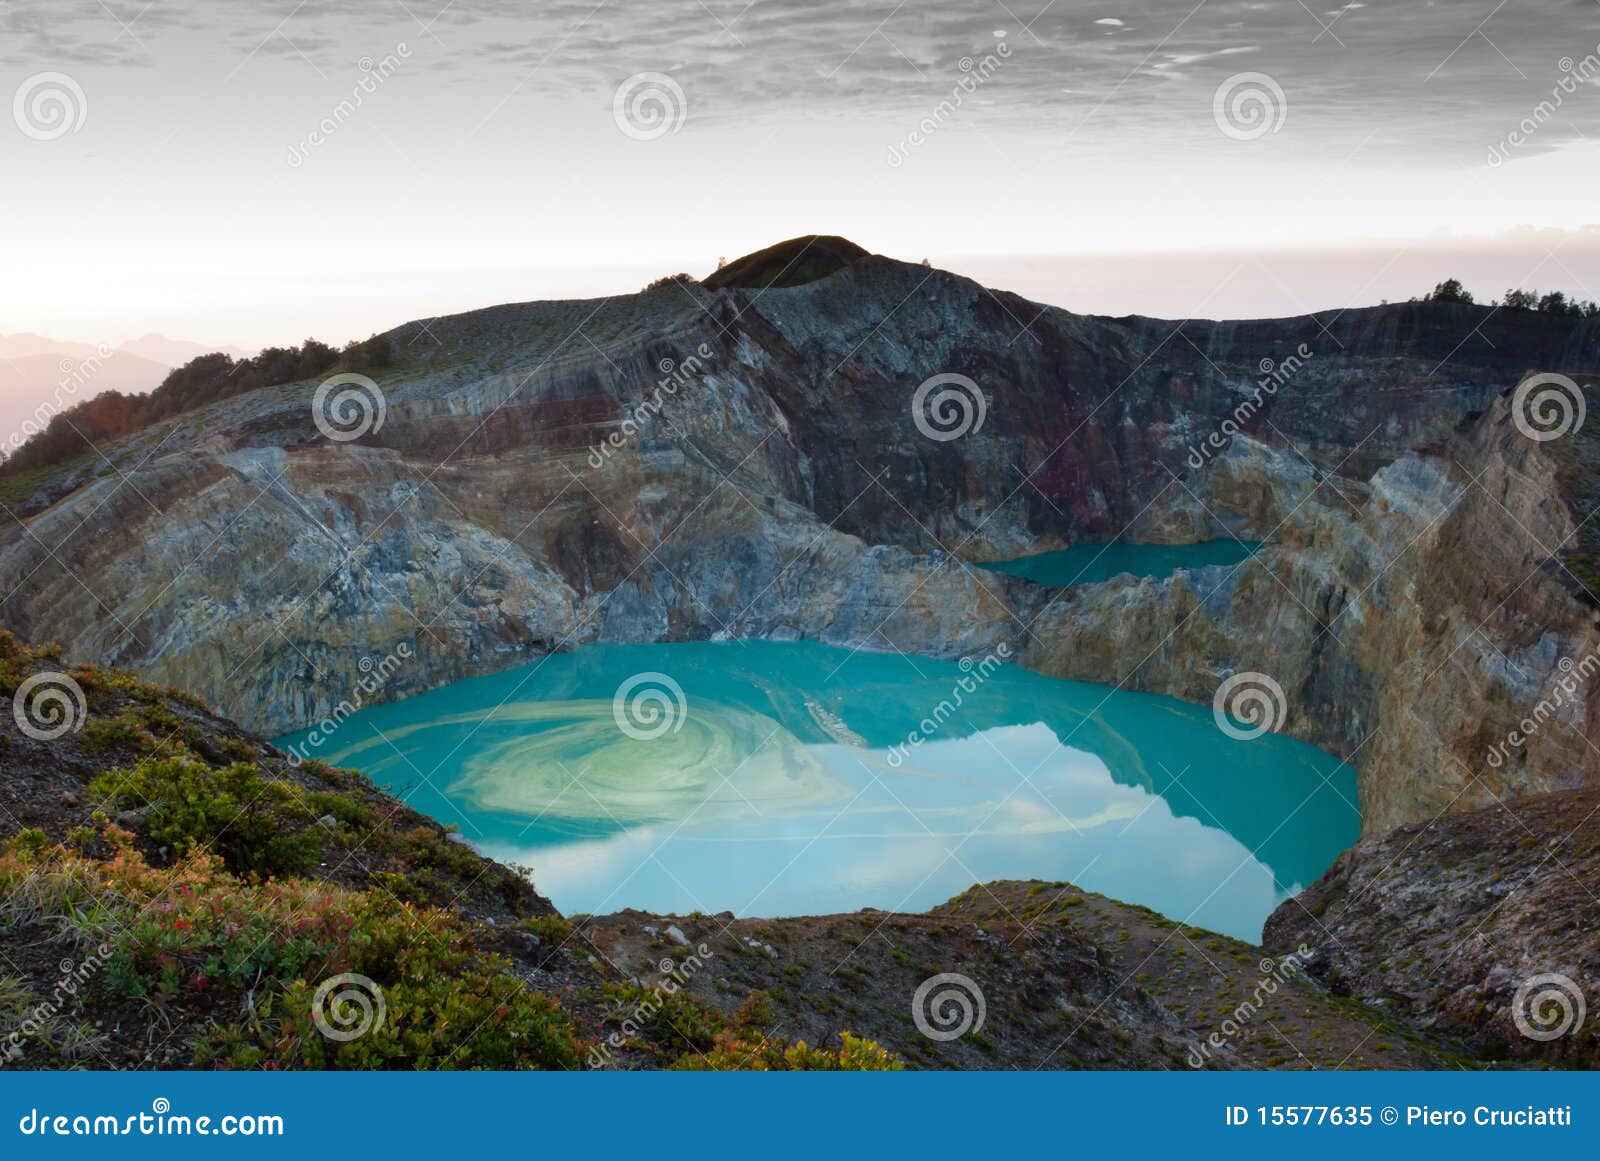 kelimutu colored crater lake